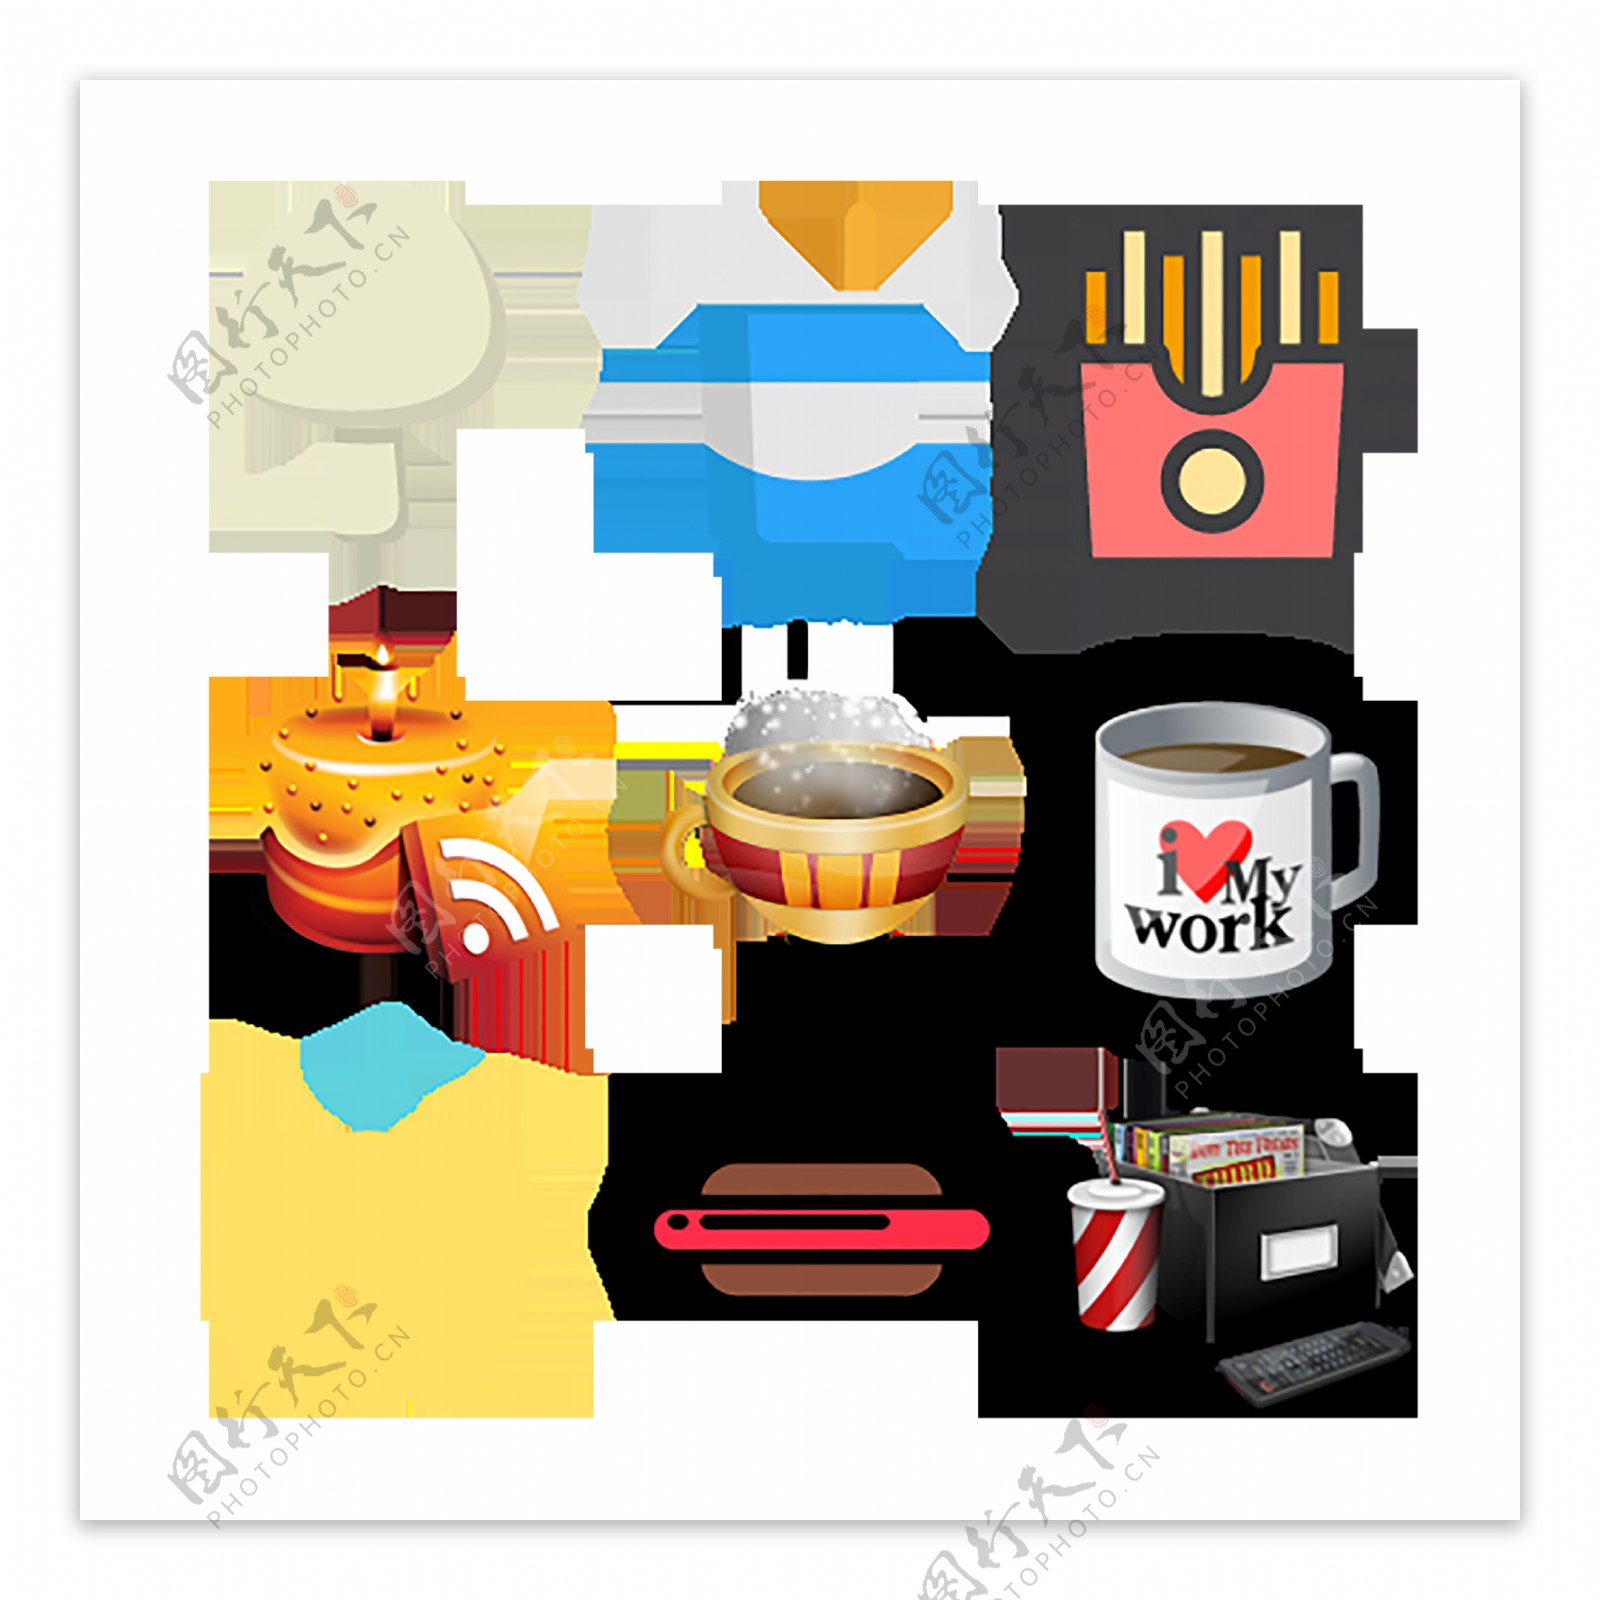 食物食品精美icon图标